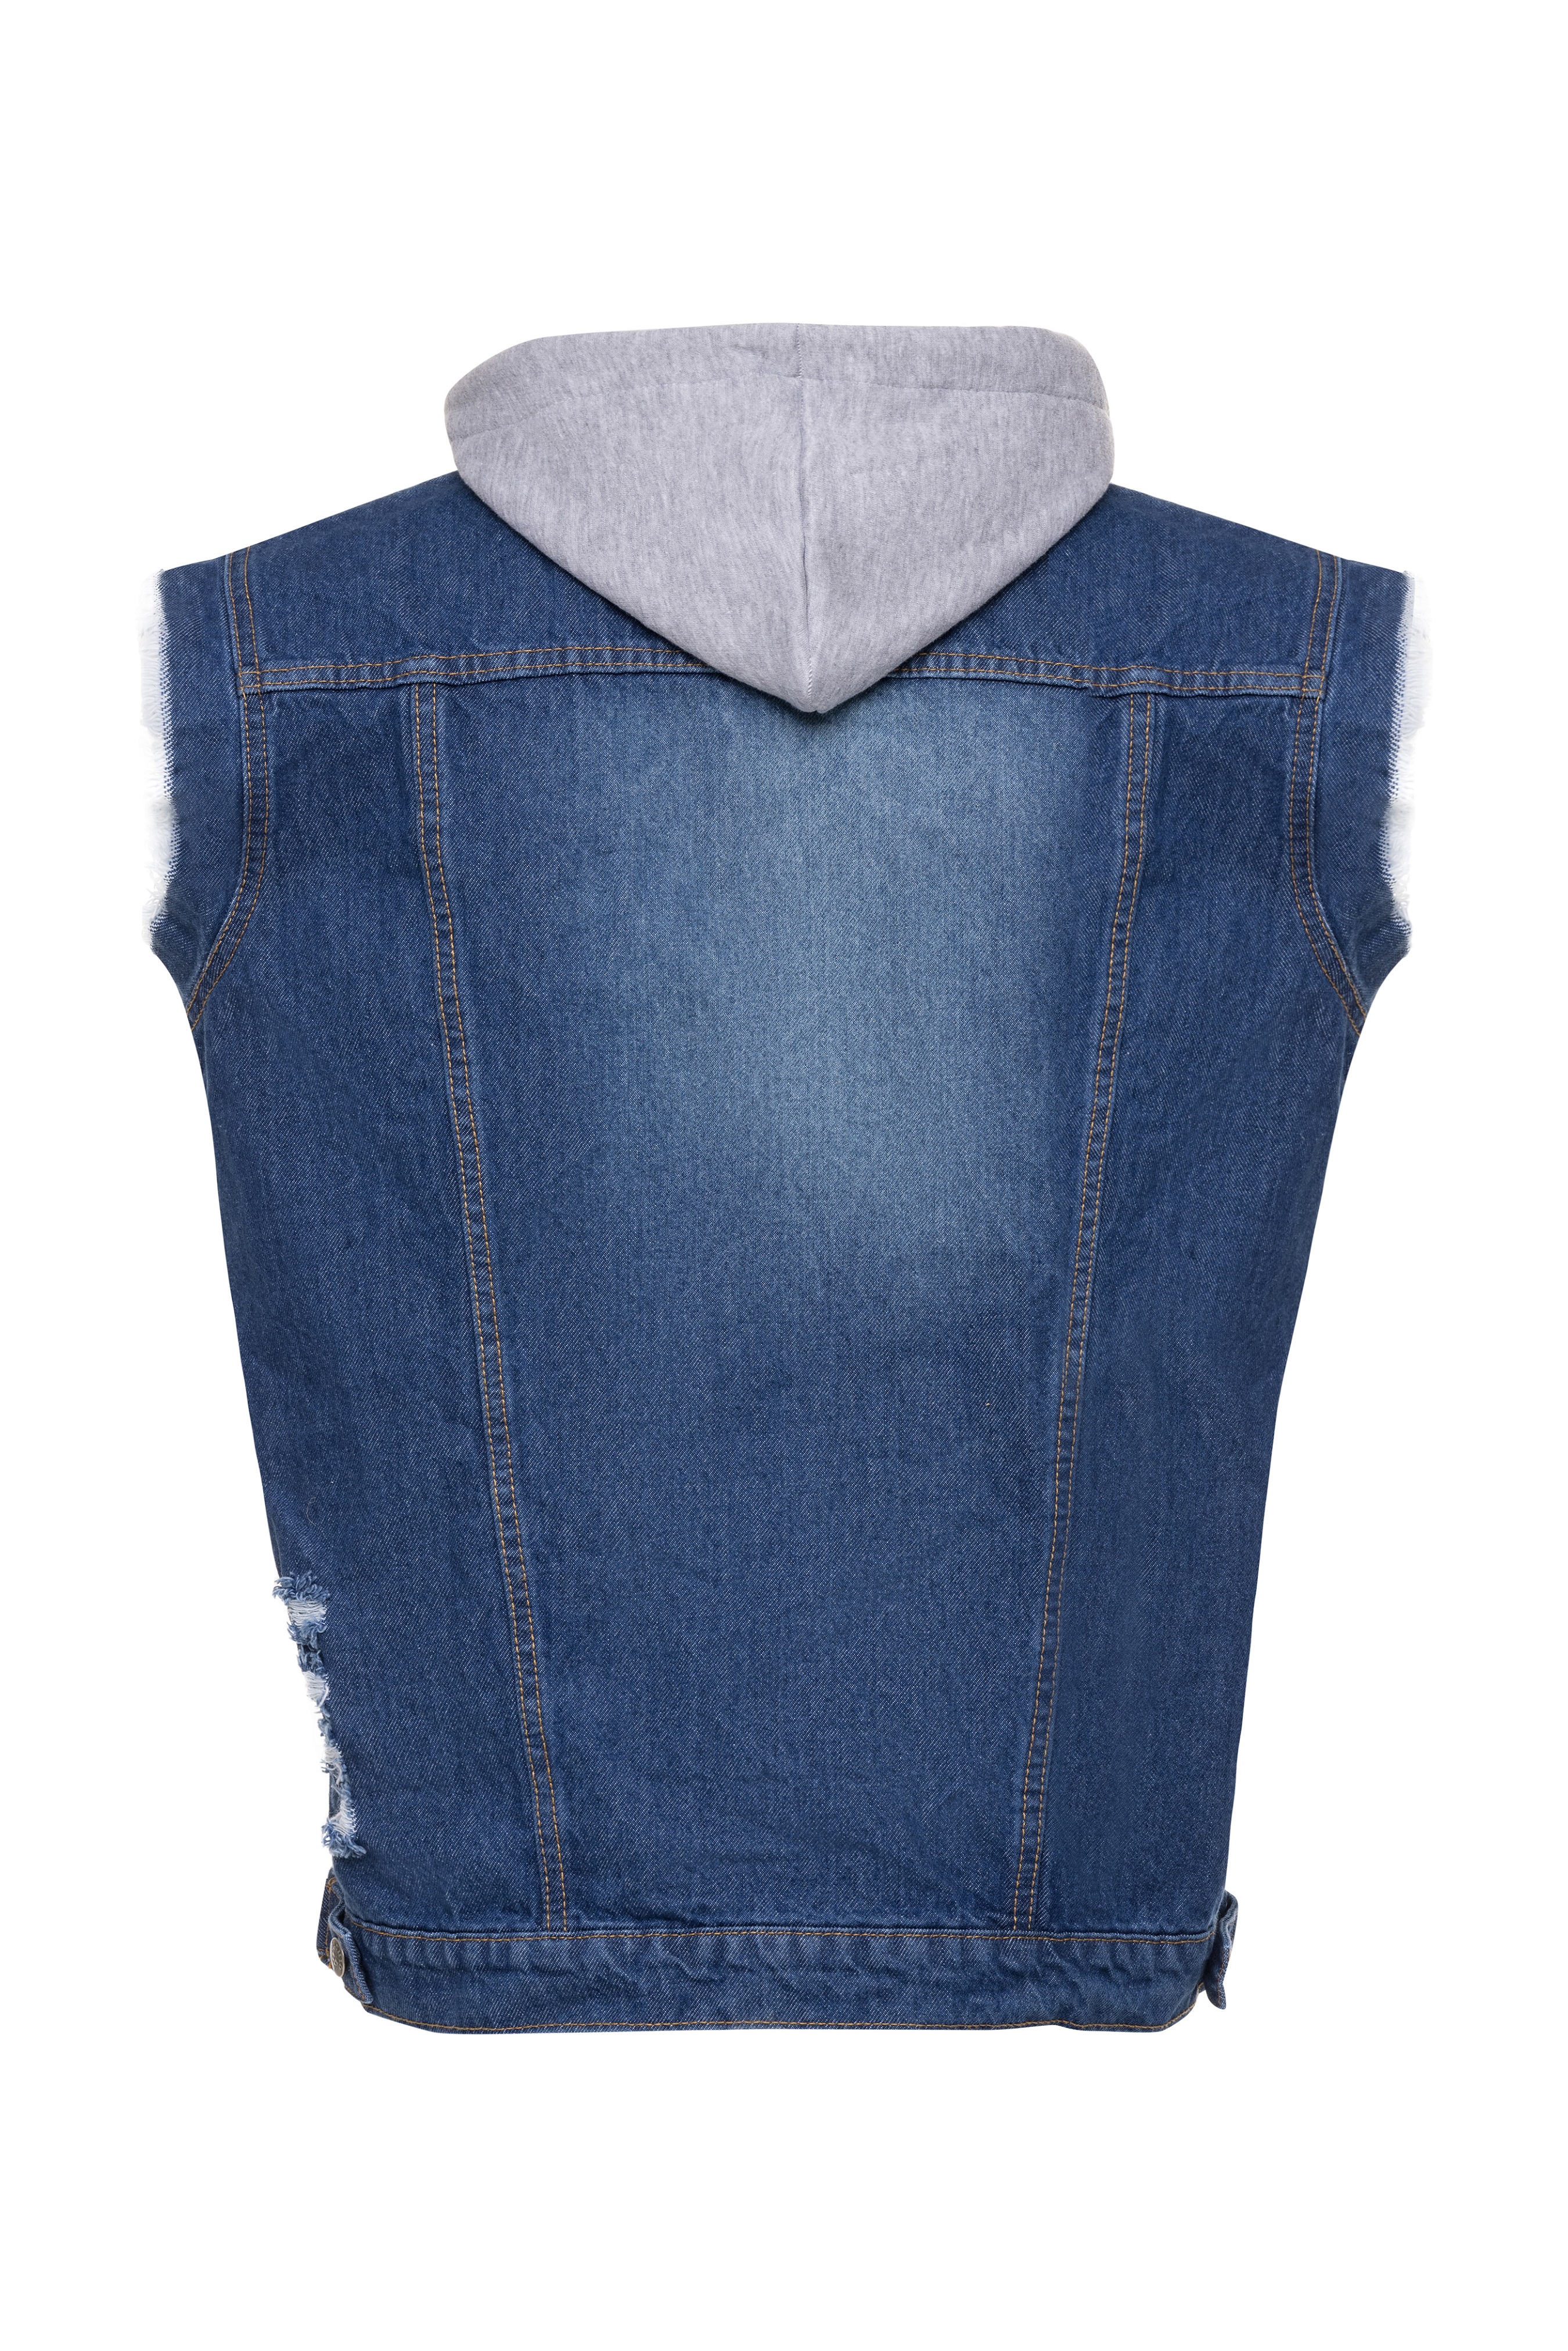 Skylinewears Men Denim Vest Biker Jean Vest With Hood Sleeveless Trucker Jean Jacket - image 3 of 5